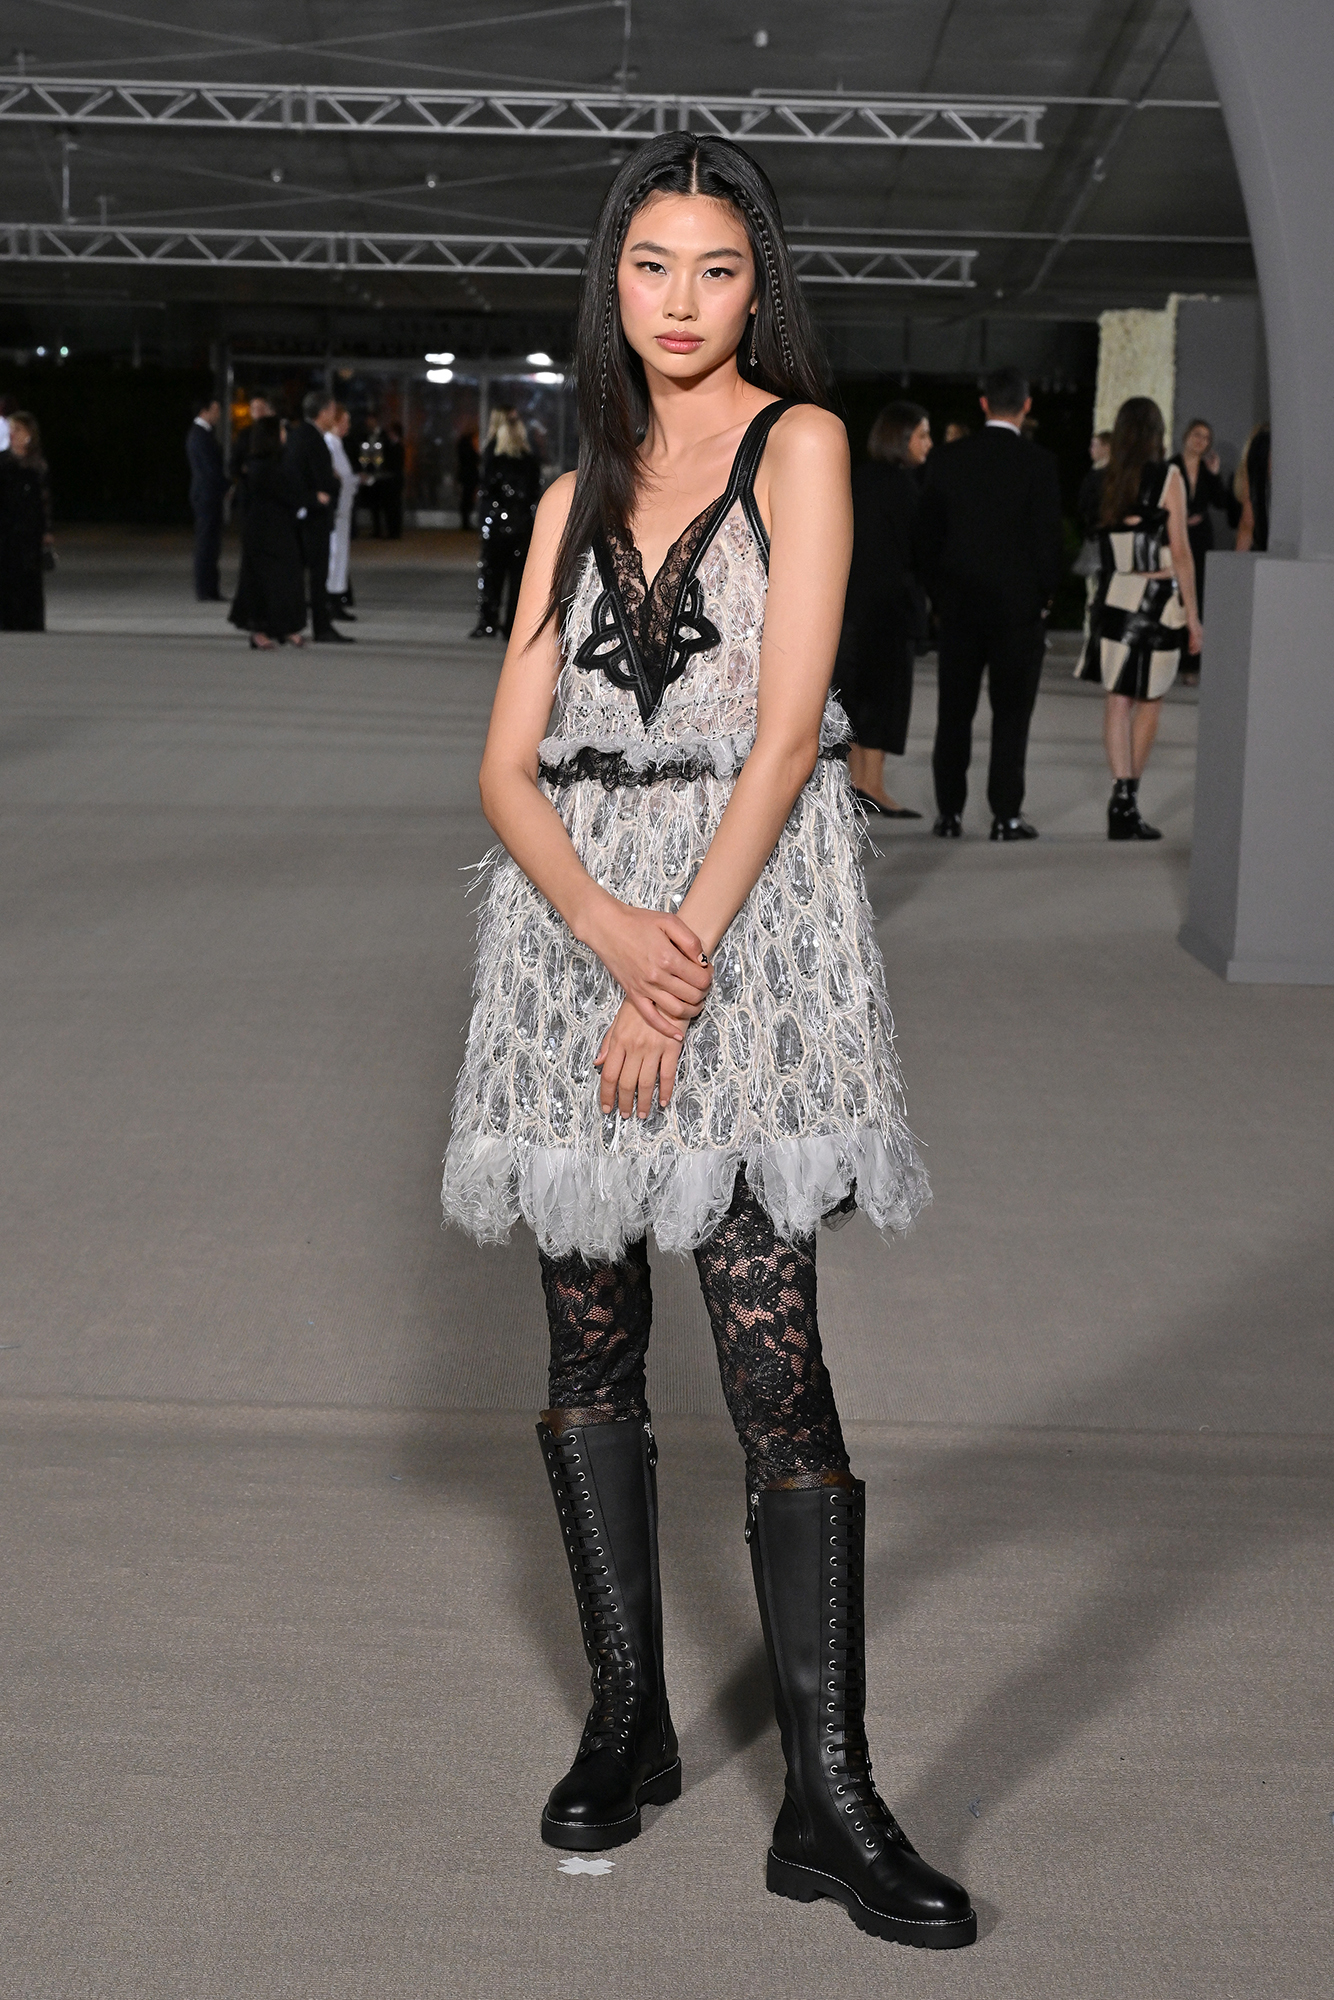 Nữ chính Squid Game quốc bảo làng thời trang  Jung Ho Yeon chính thức  trở thành đại sứ toàn cầu cho Louis Vuitton  StyleRepublikcom  Thời  Trang sáng tạo và